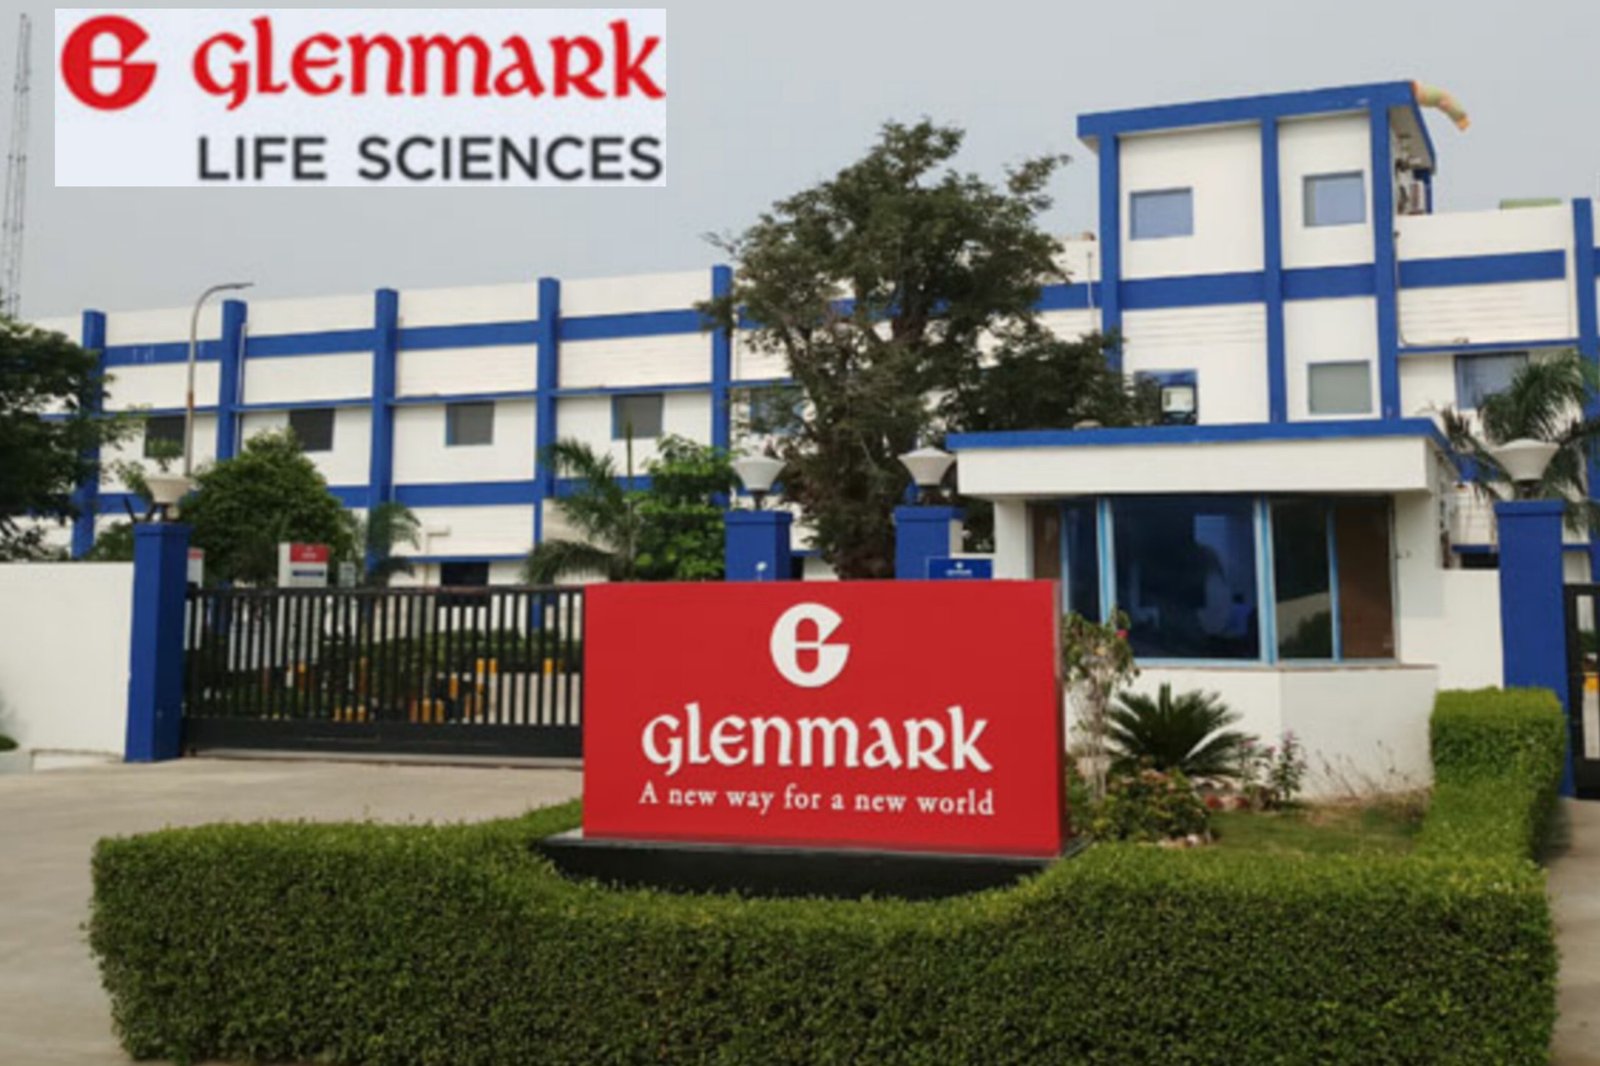 Glenmark life science logo